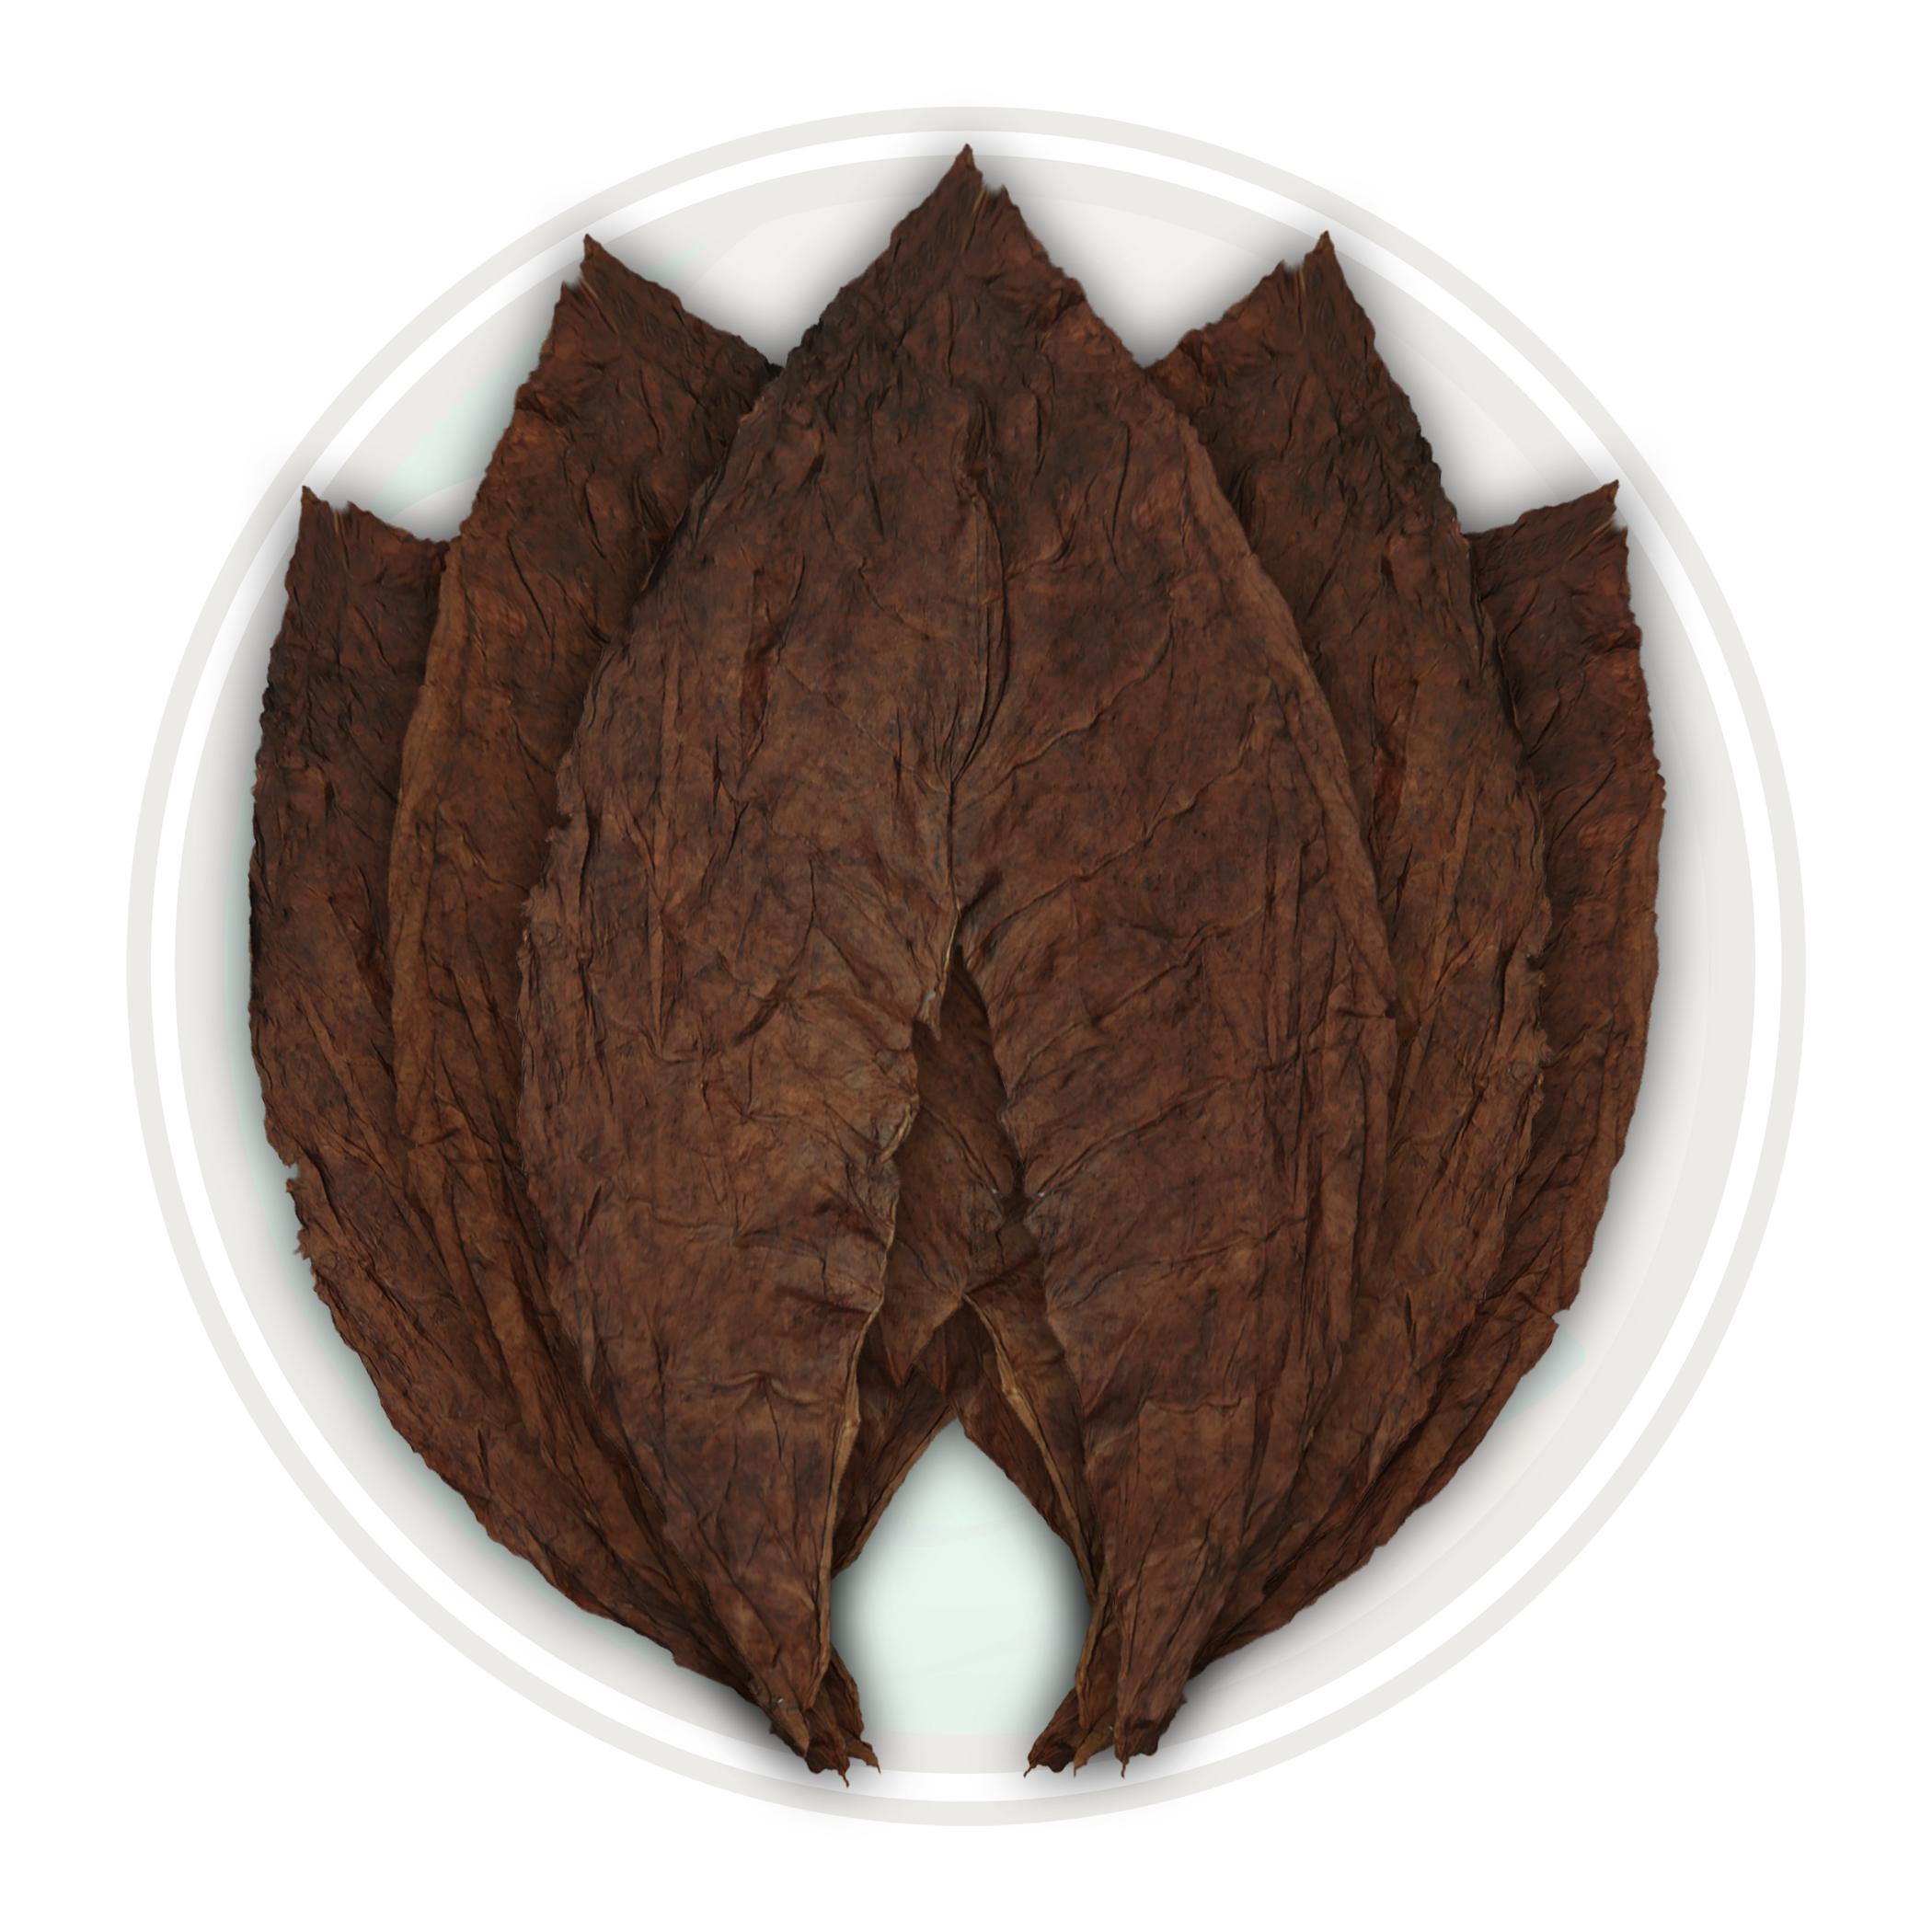 Grades of Tobacco Leaf - Wrapper vs Binder vs Filler Tobacco